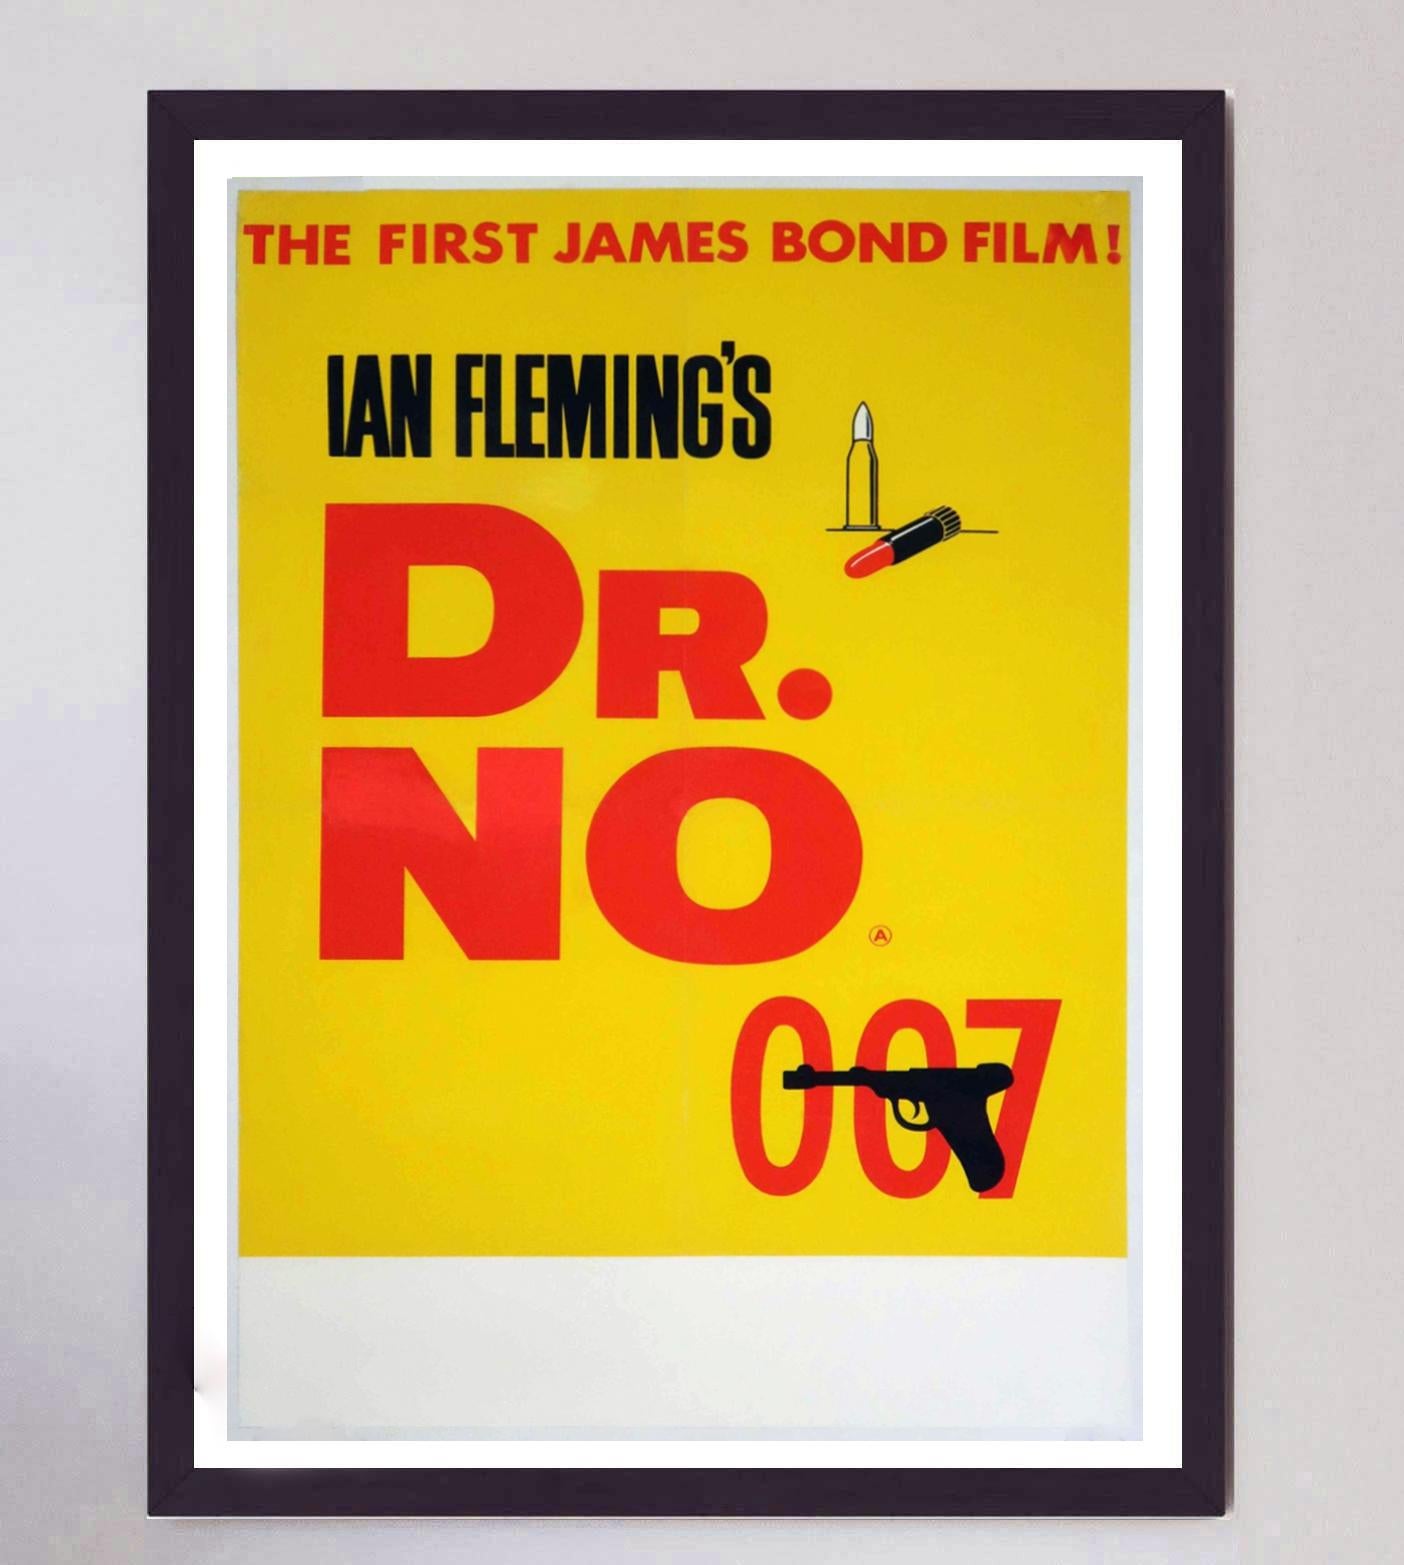 Der erste Film der bahnbrechenden James-Bond-Reihe, 